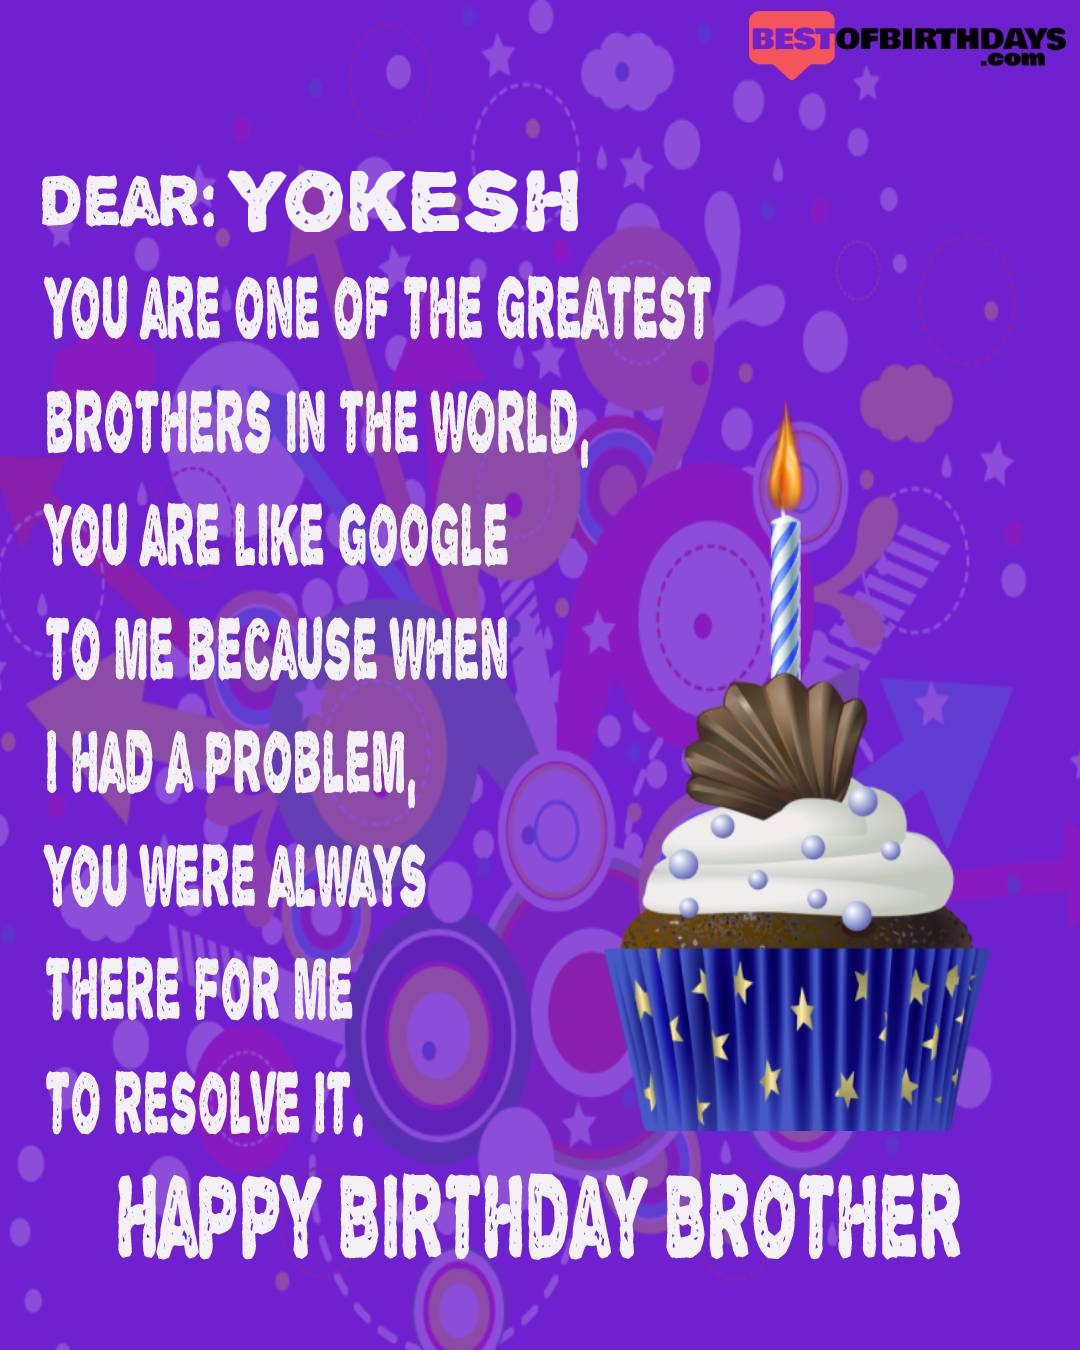 Happy birthday yokesh bhai brother bro